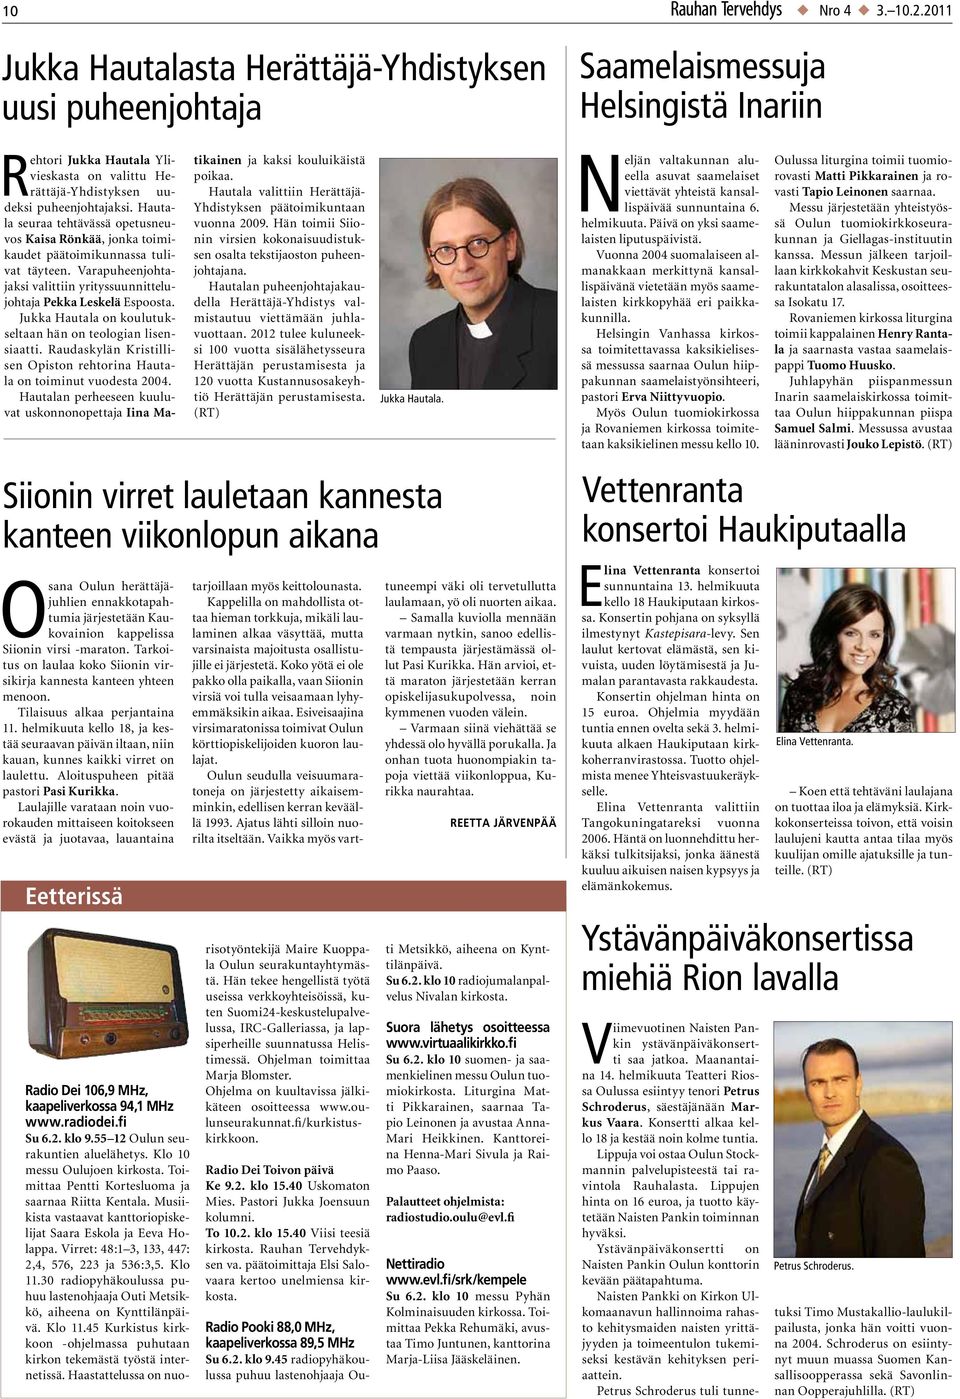 Jukka Hautala on koulutukseltaan hän on teologian lisensiaatti. Raudaskylän Kristillisen Opiston rehtorina Hautala on toiminut vuodesta 2004.